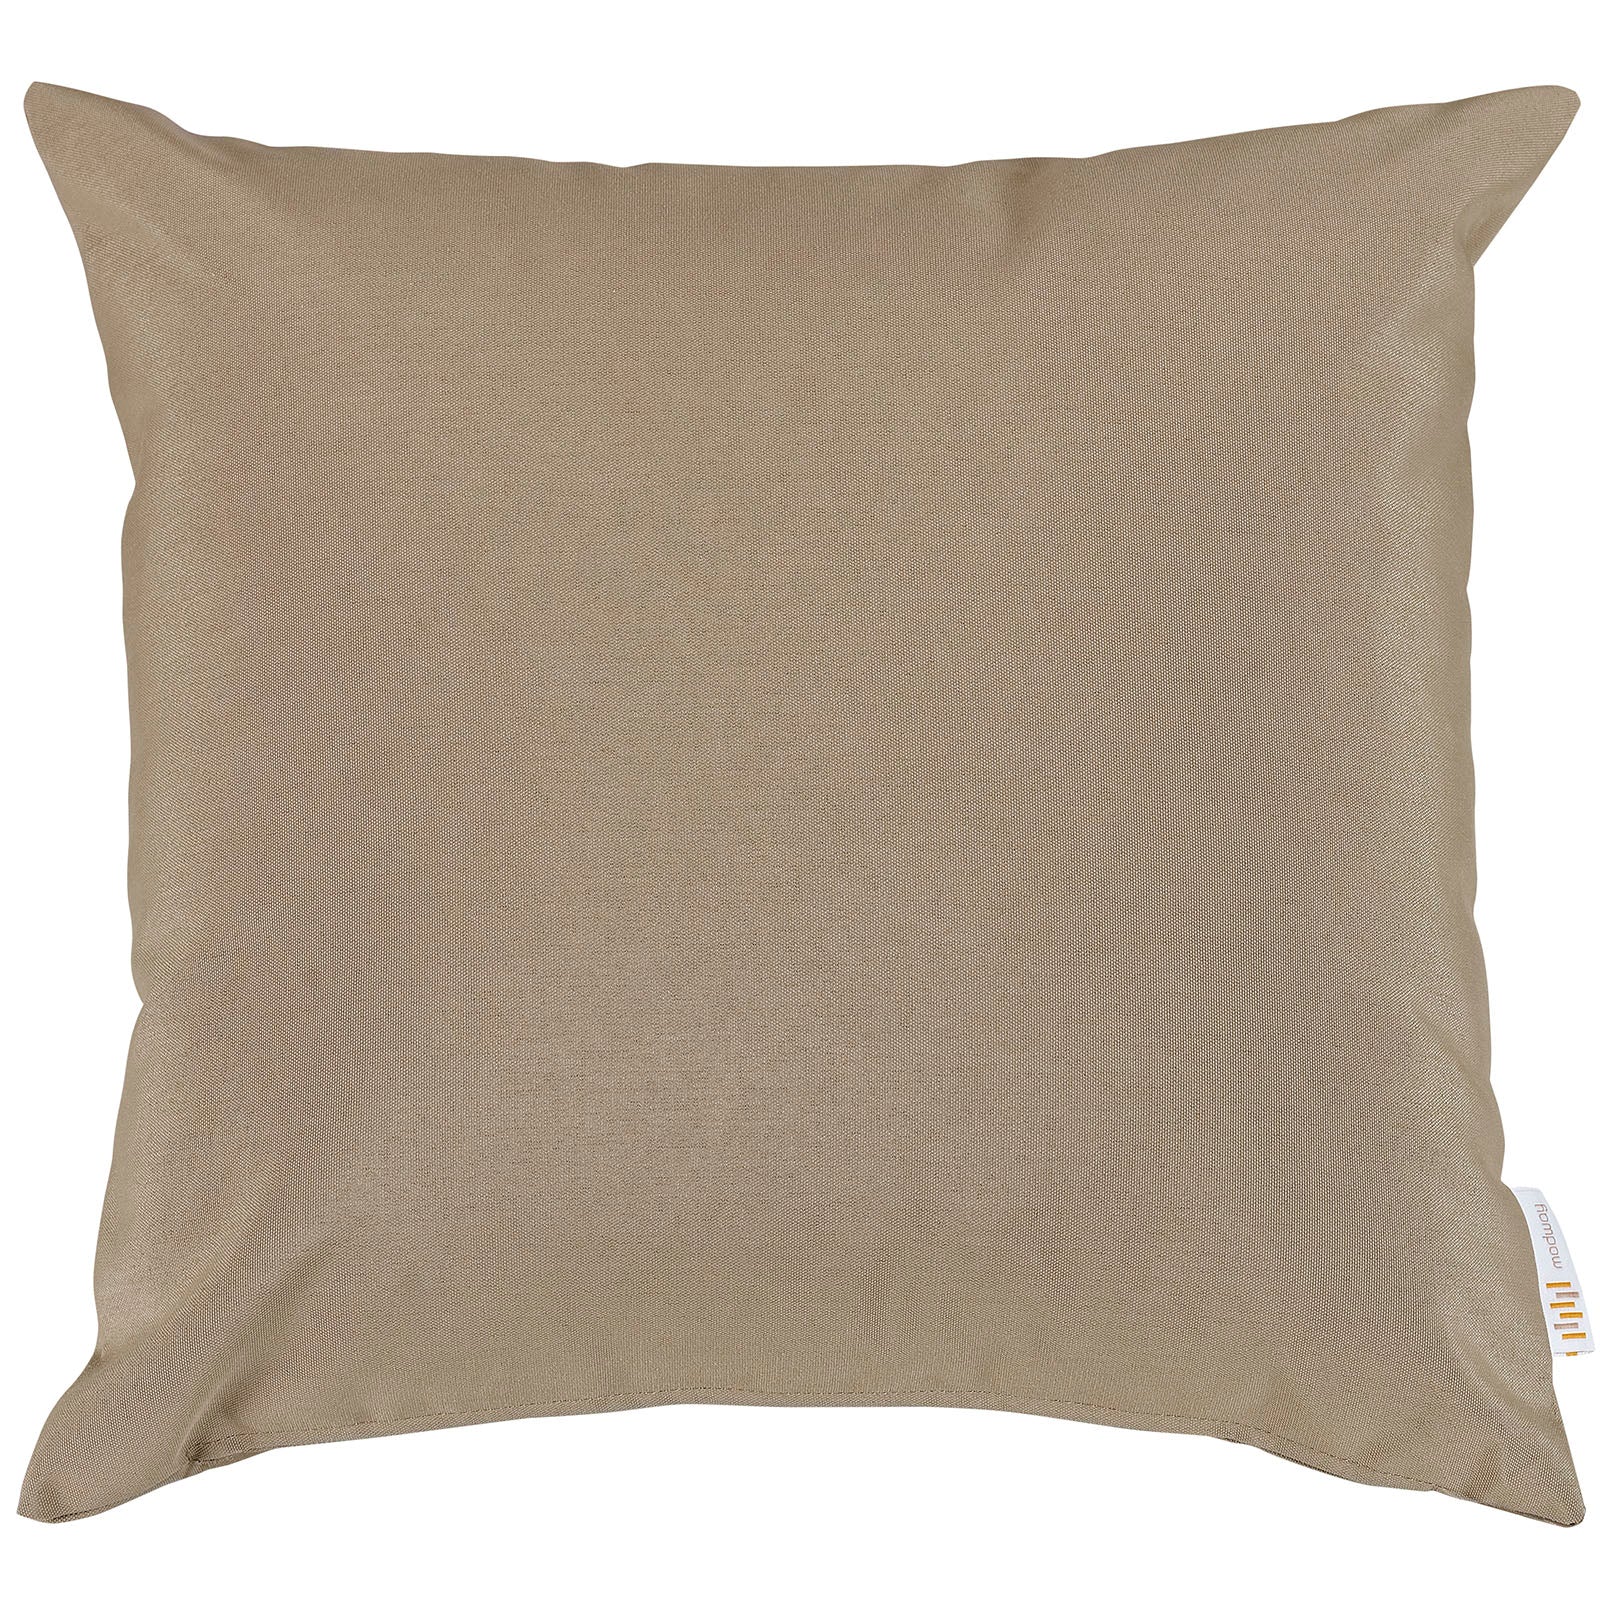 Modway Outdoor Pillows & Cushions - Convene Outdoor Patio Pillow Mocha (Set of 2)